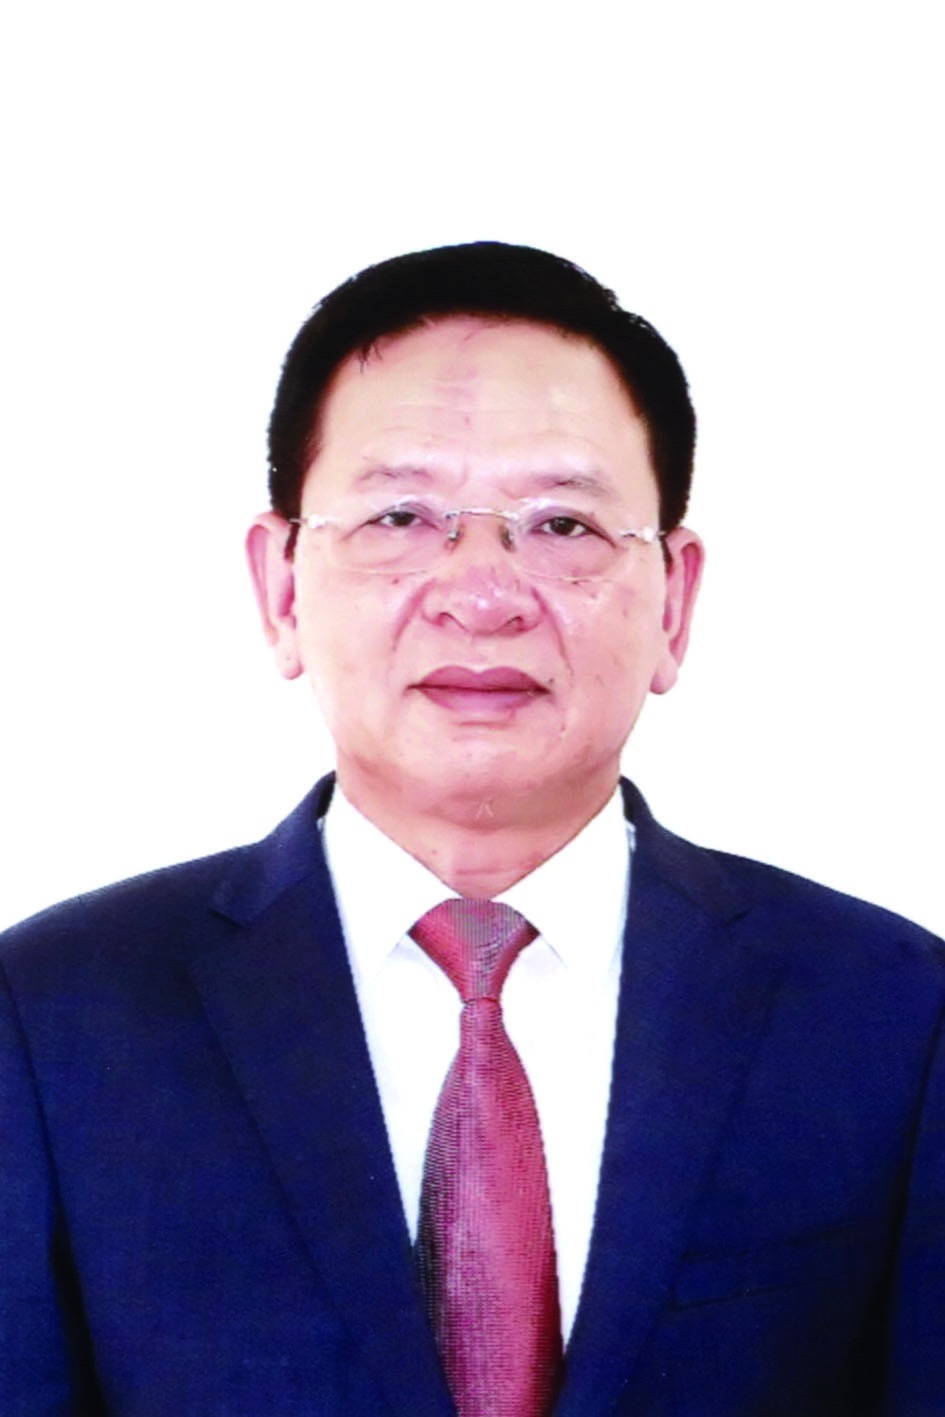 Chương trình hành động của Bí thư Quận ủy Nam Từ Liêm Trần Đức Hoạt, ứng cử viên đại biểu HĐND TP Hà Nội nhiệm kỳ 2021 - 2026 - Ảnh 1